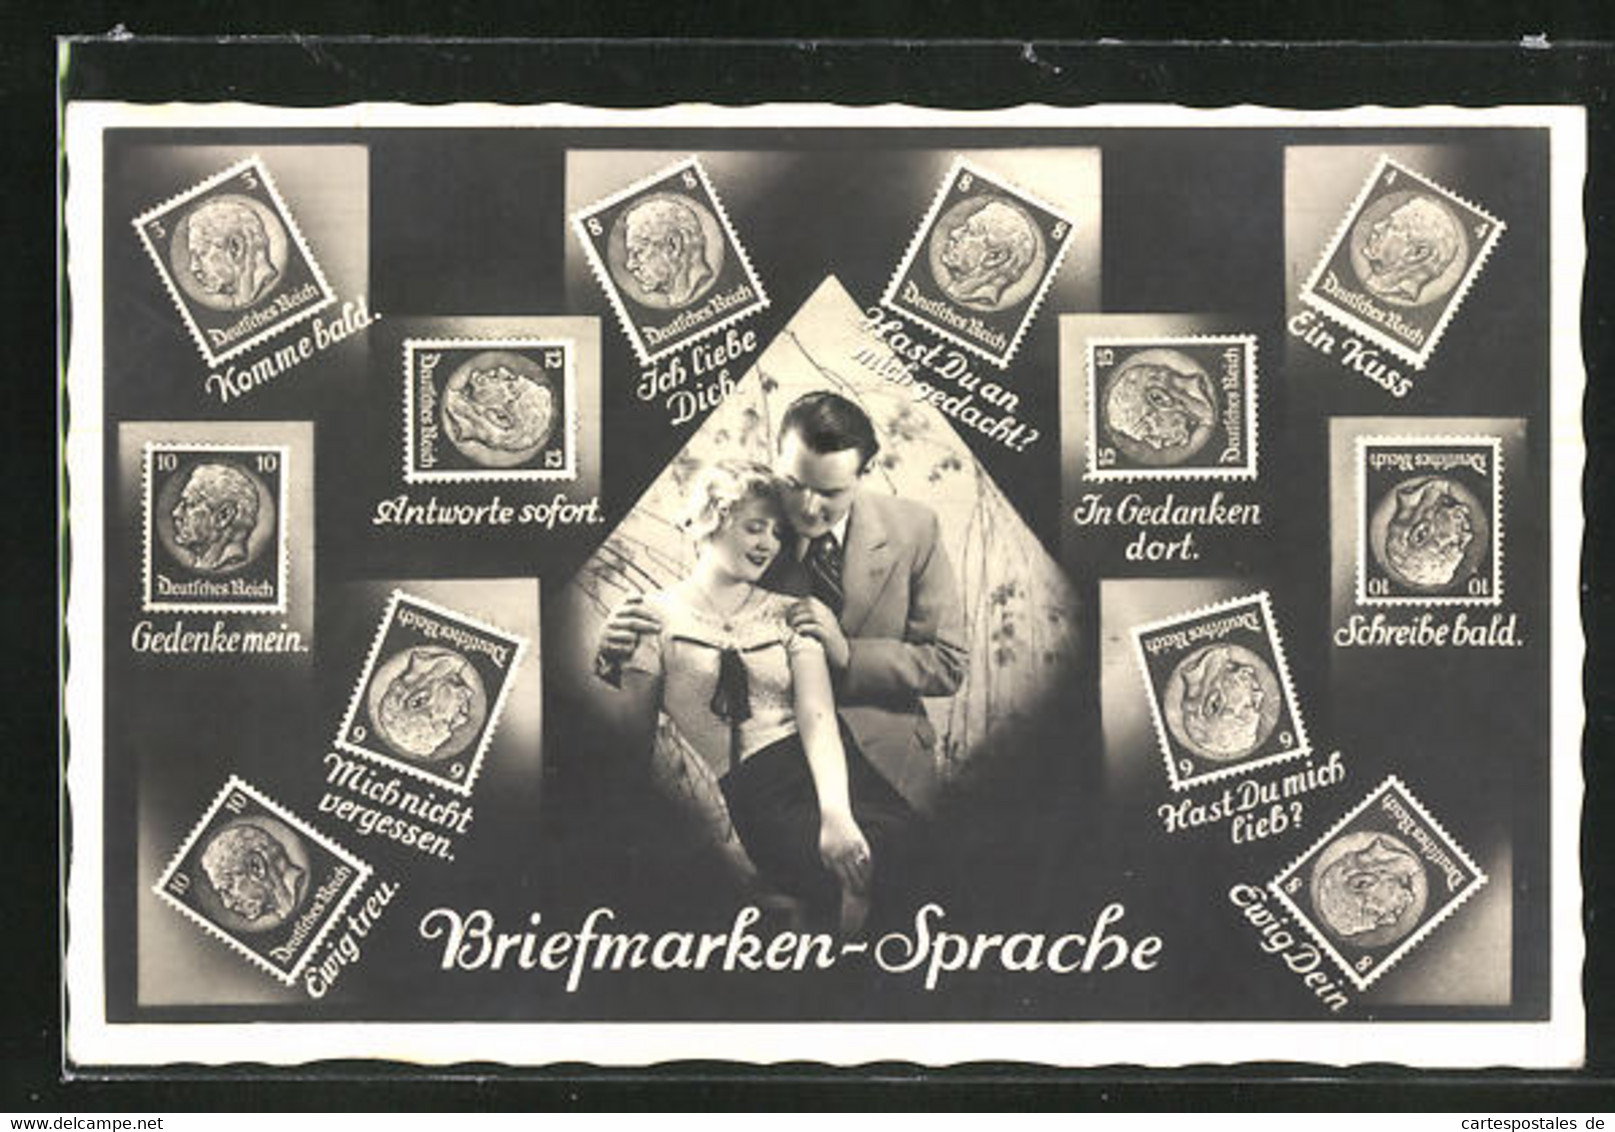 AK Briefmarkensprache, Verliebtes Paar, Bismarck Briefmarken Mit Motivsprüchen, In Gedanken Dort - Briefmarken (Abbildungen)